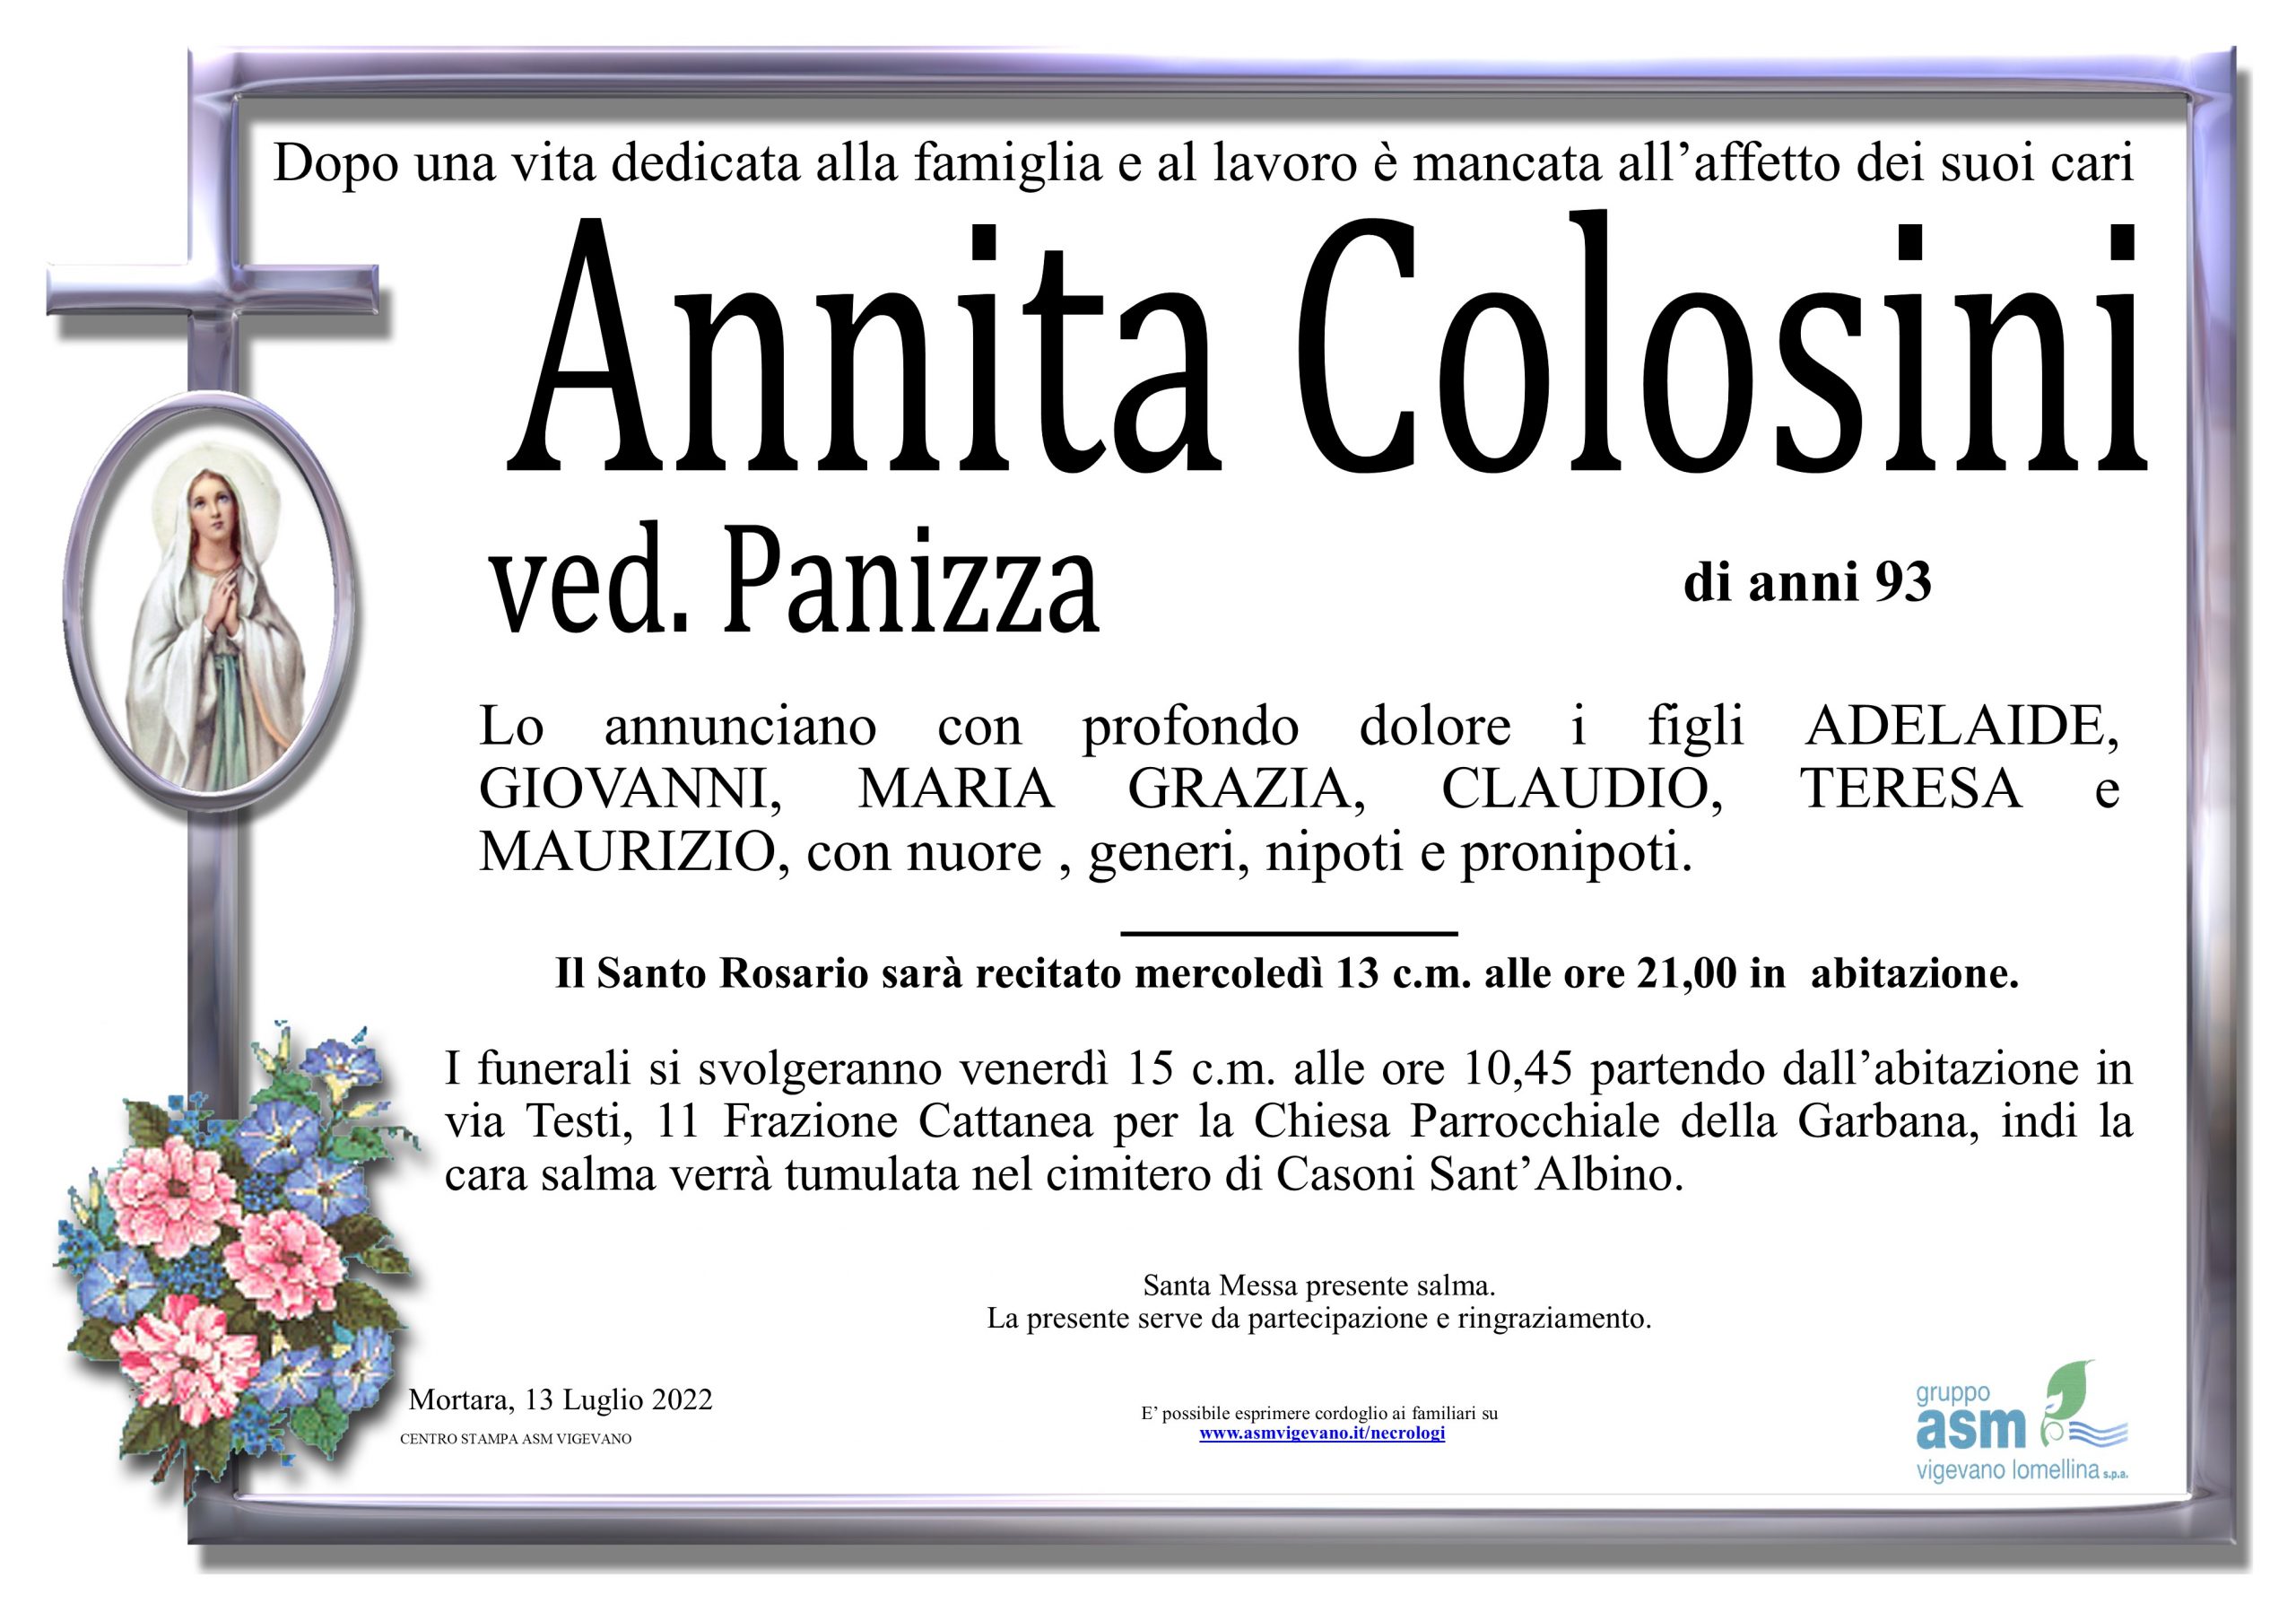 Annita Colosini